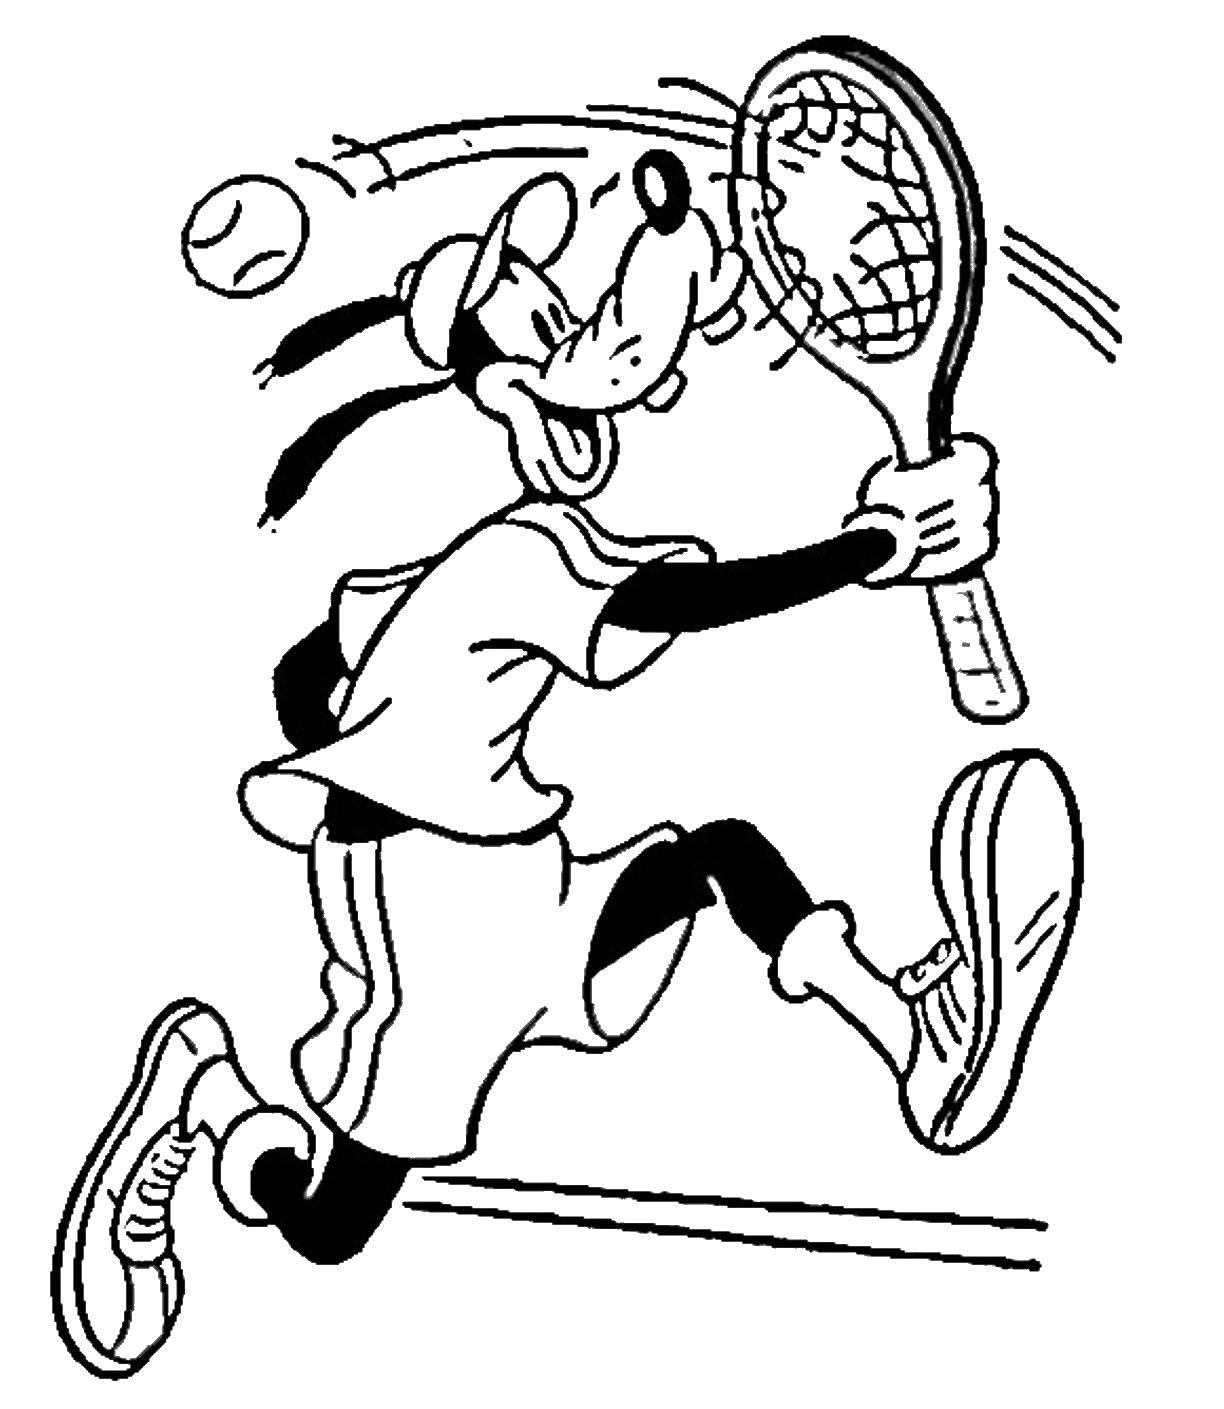 Название: Раскраска Теннис. Категория: Спорт. Теги: спорт, теннис, собака.